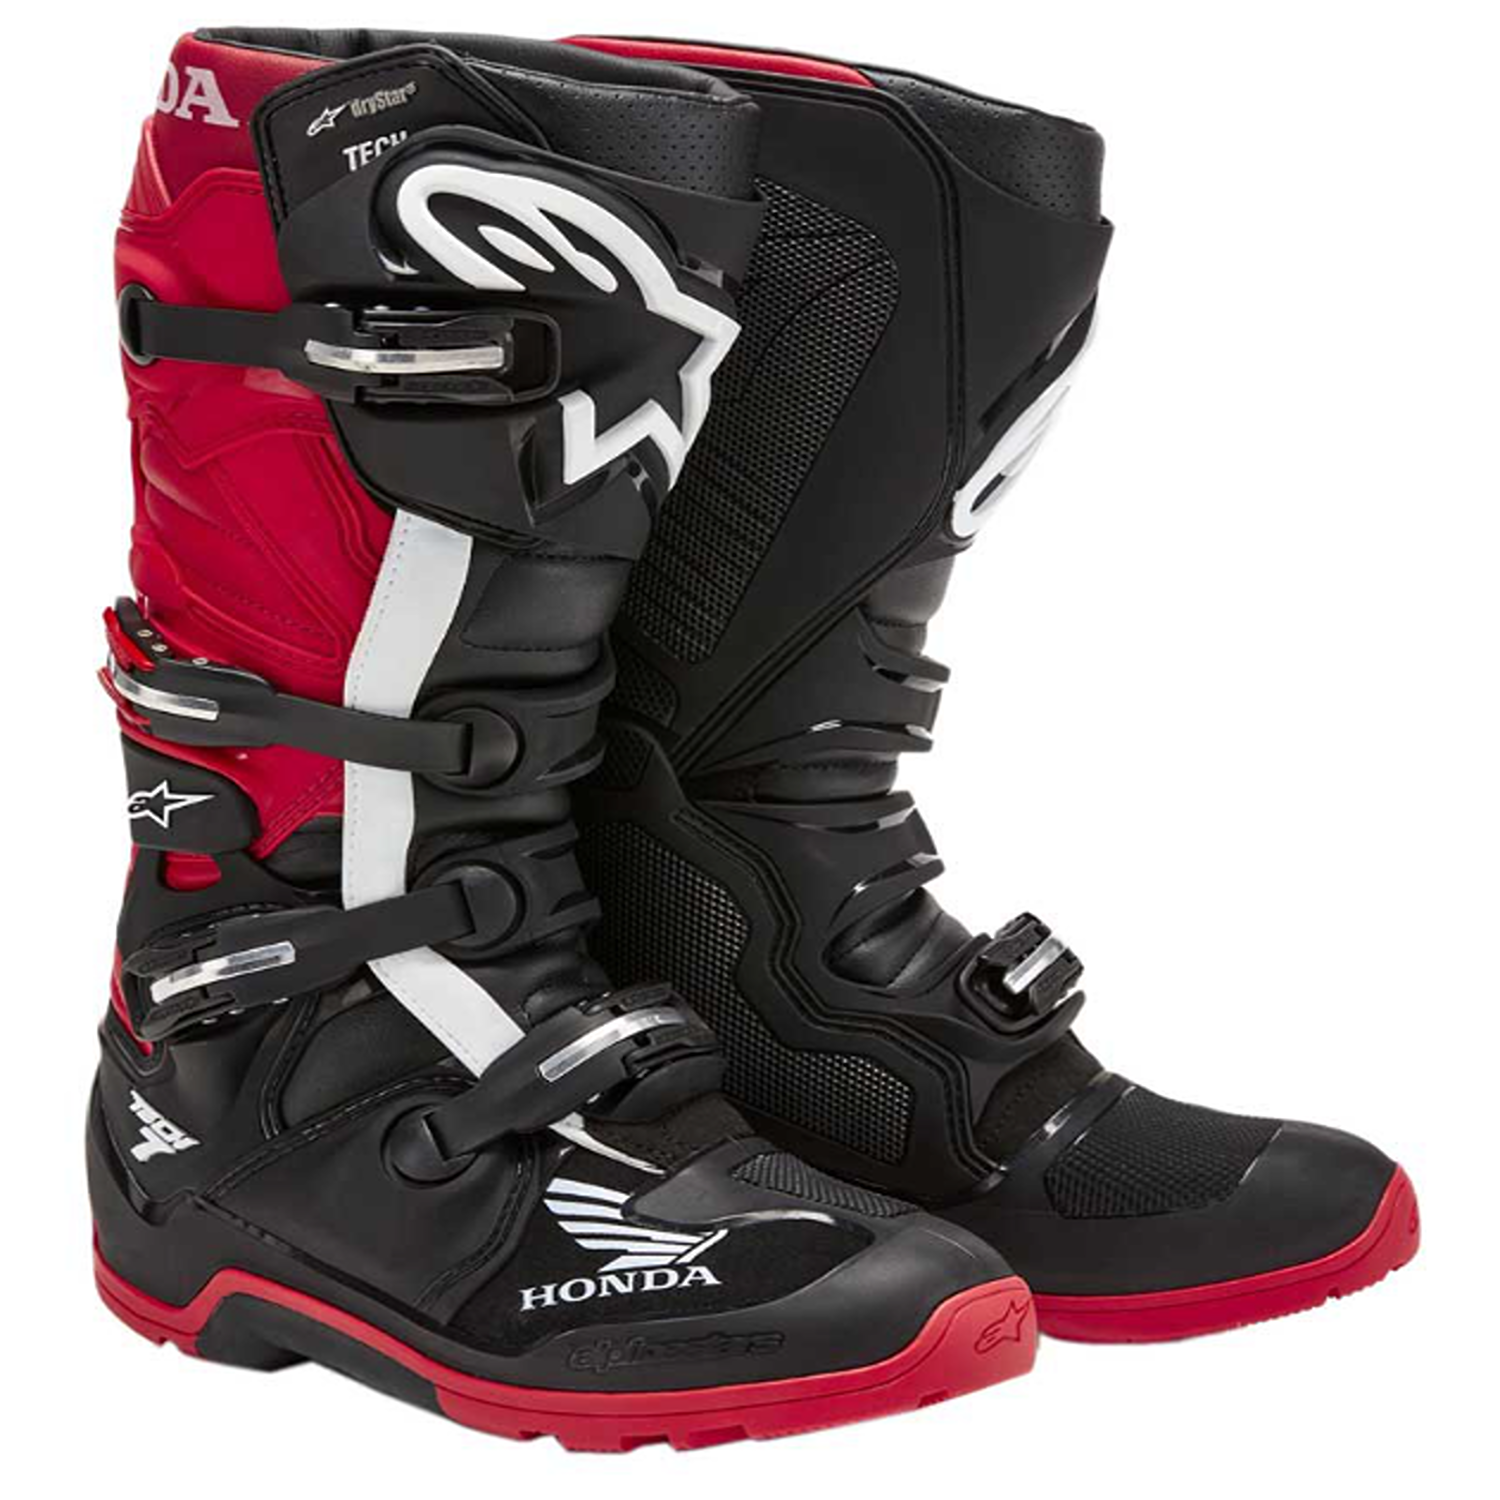 Image of Alpinestars Honda Tech 7 Enduro Drystar Boots Black Bright Red Size US 5 EN